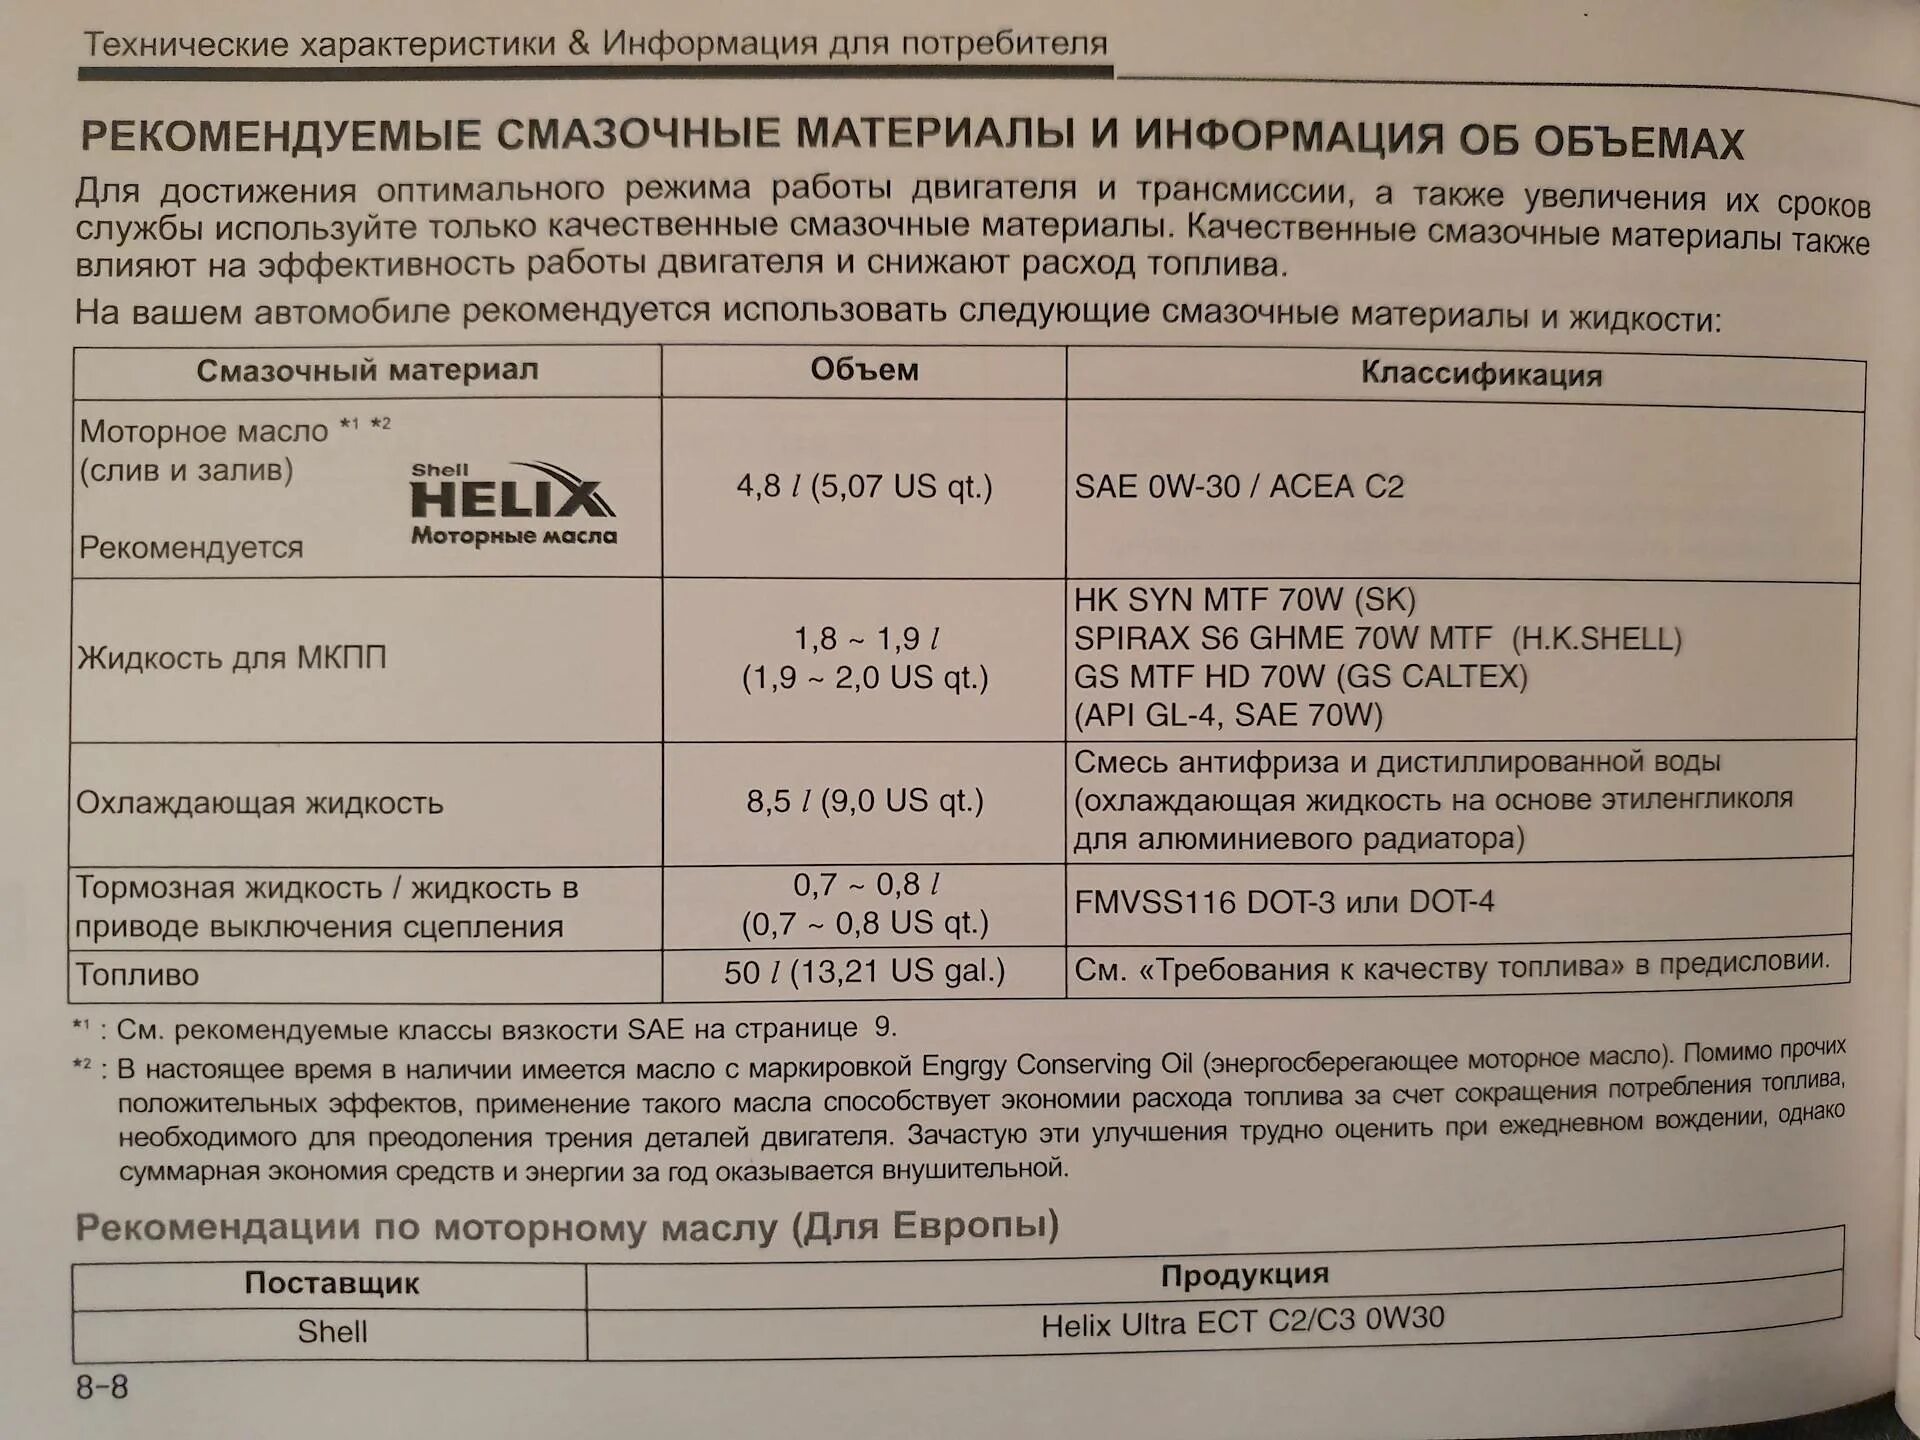 Хендай солярис рекомендованные моторные масла. Допуски масла для Хендай Солярис 1.6. Solaris Hyundai 2015 допуски масла 1,6. Допуски моторного масла Хендай i30 1,6. Solaris 1.6 масло в двигатель допуски.